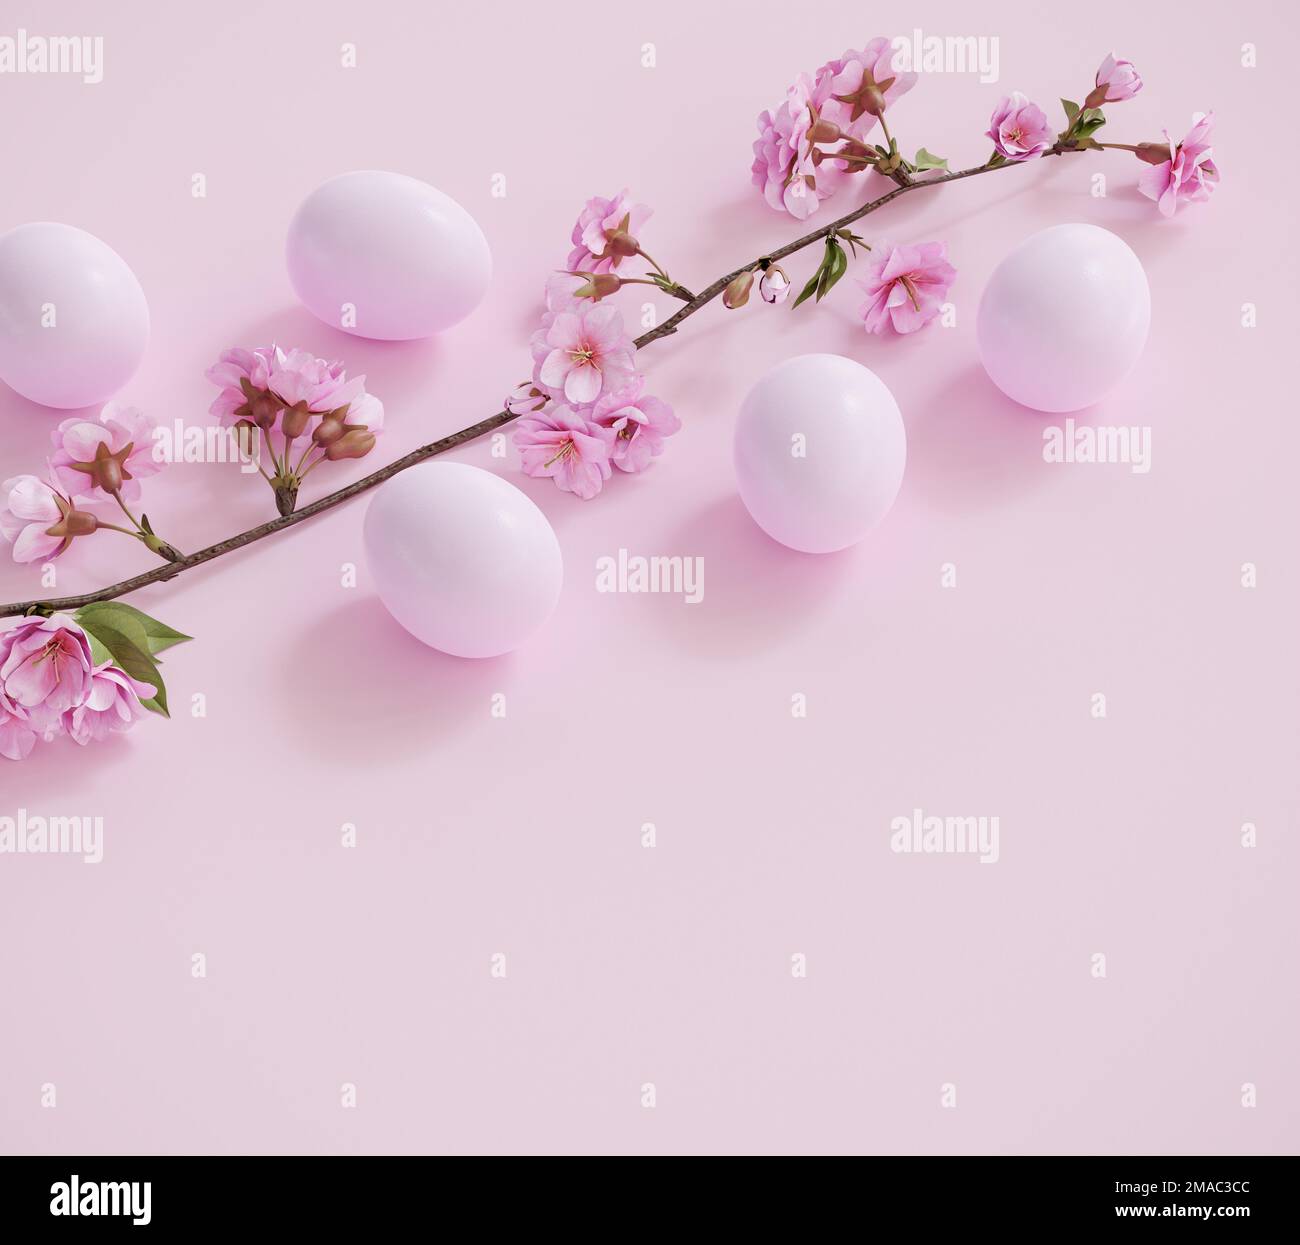 Fond de Pâques : oeufs de Pâques sur fond rose pastel avec une branche d'un cerisier fleuri Banque D'Images